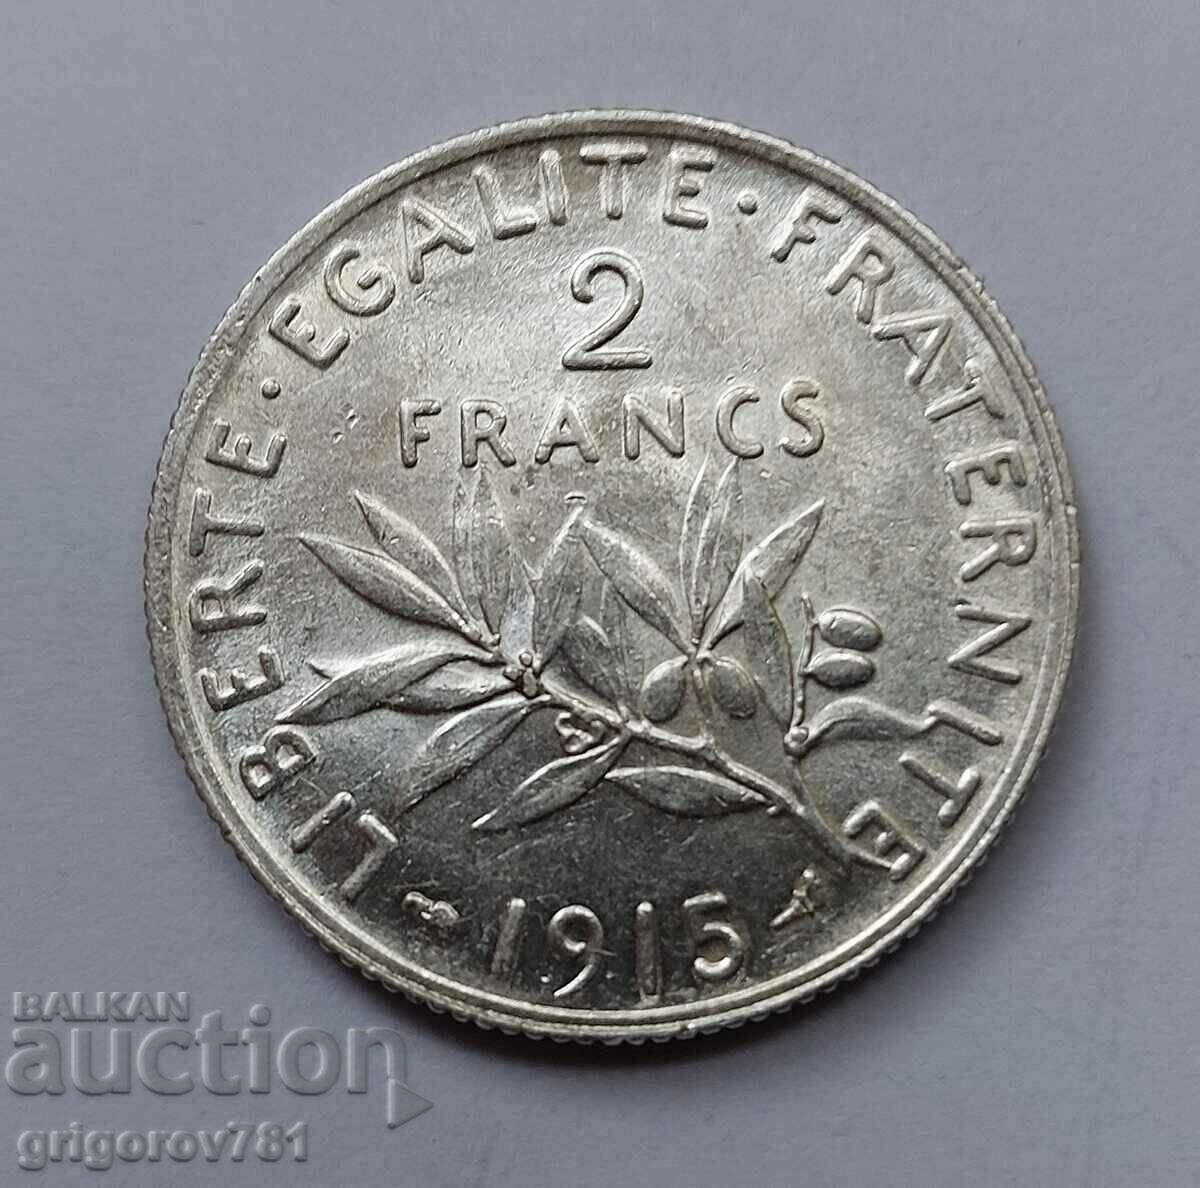 2 Franci Argint Franta 1915 - Moneda de argint #75